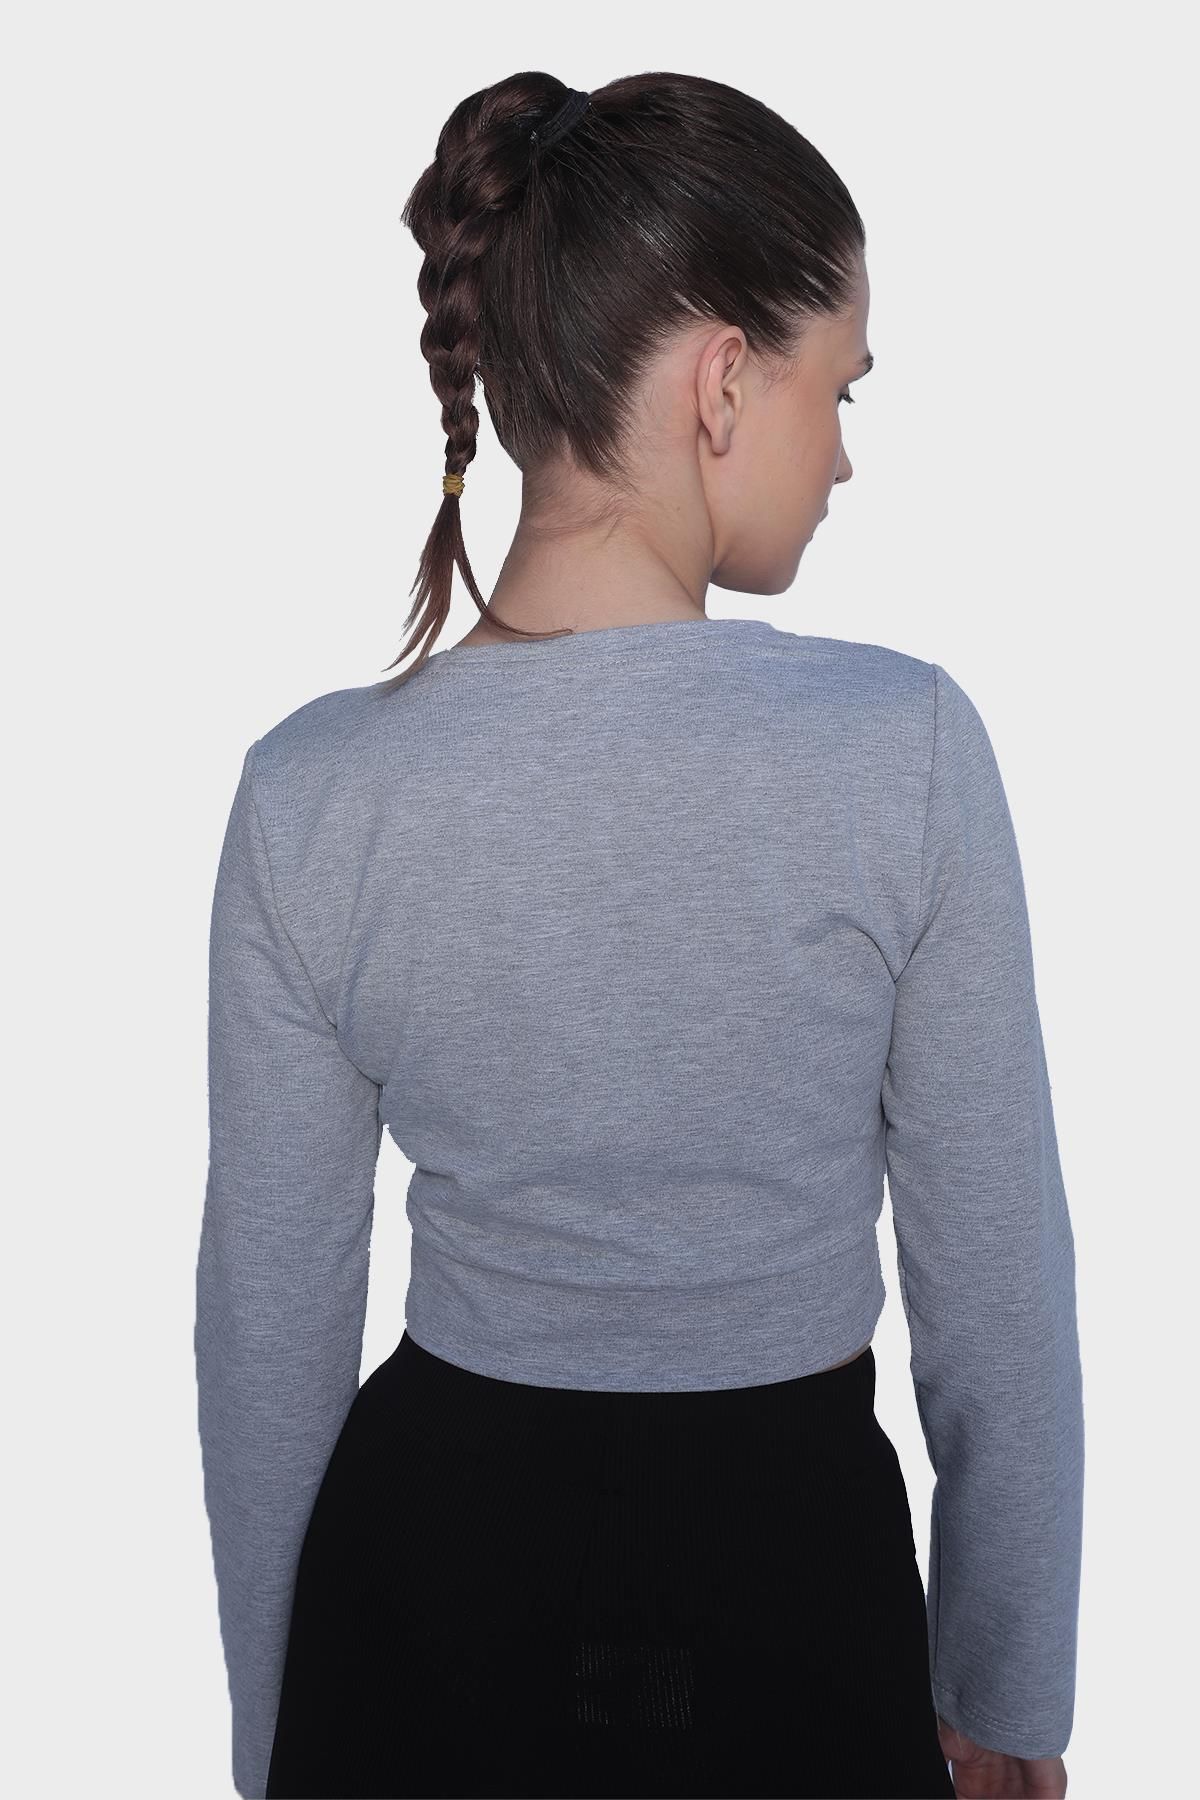 Женская укороченная блузка с длинным рукавом и вырезом - серый